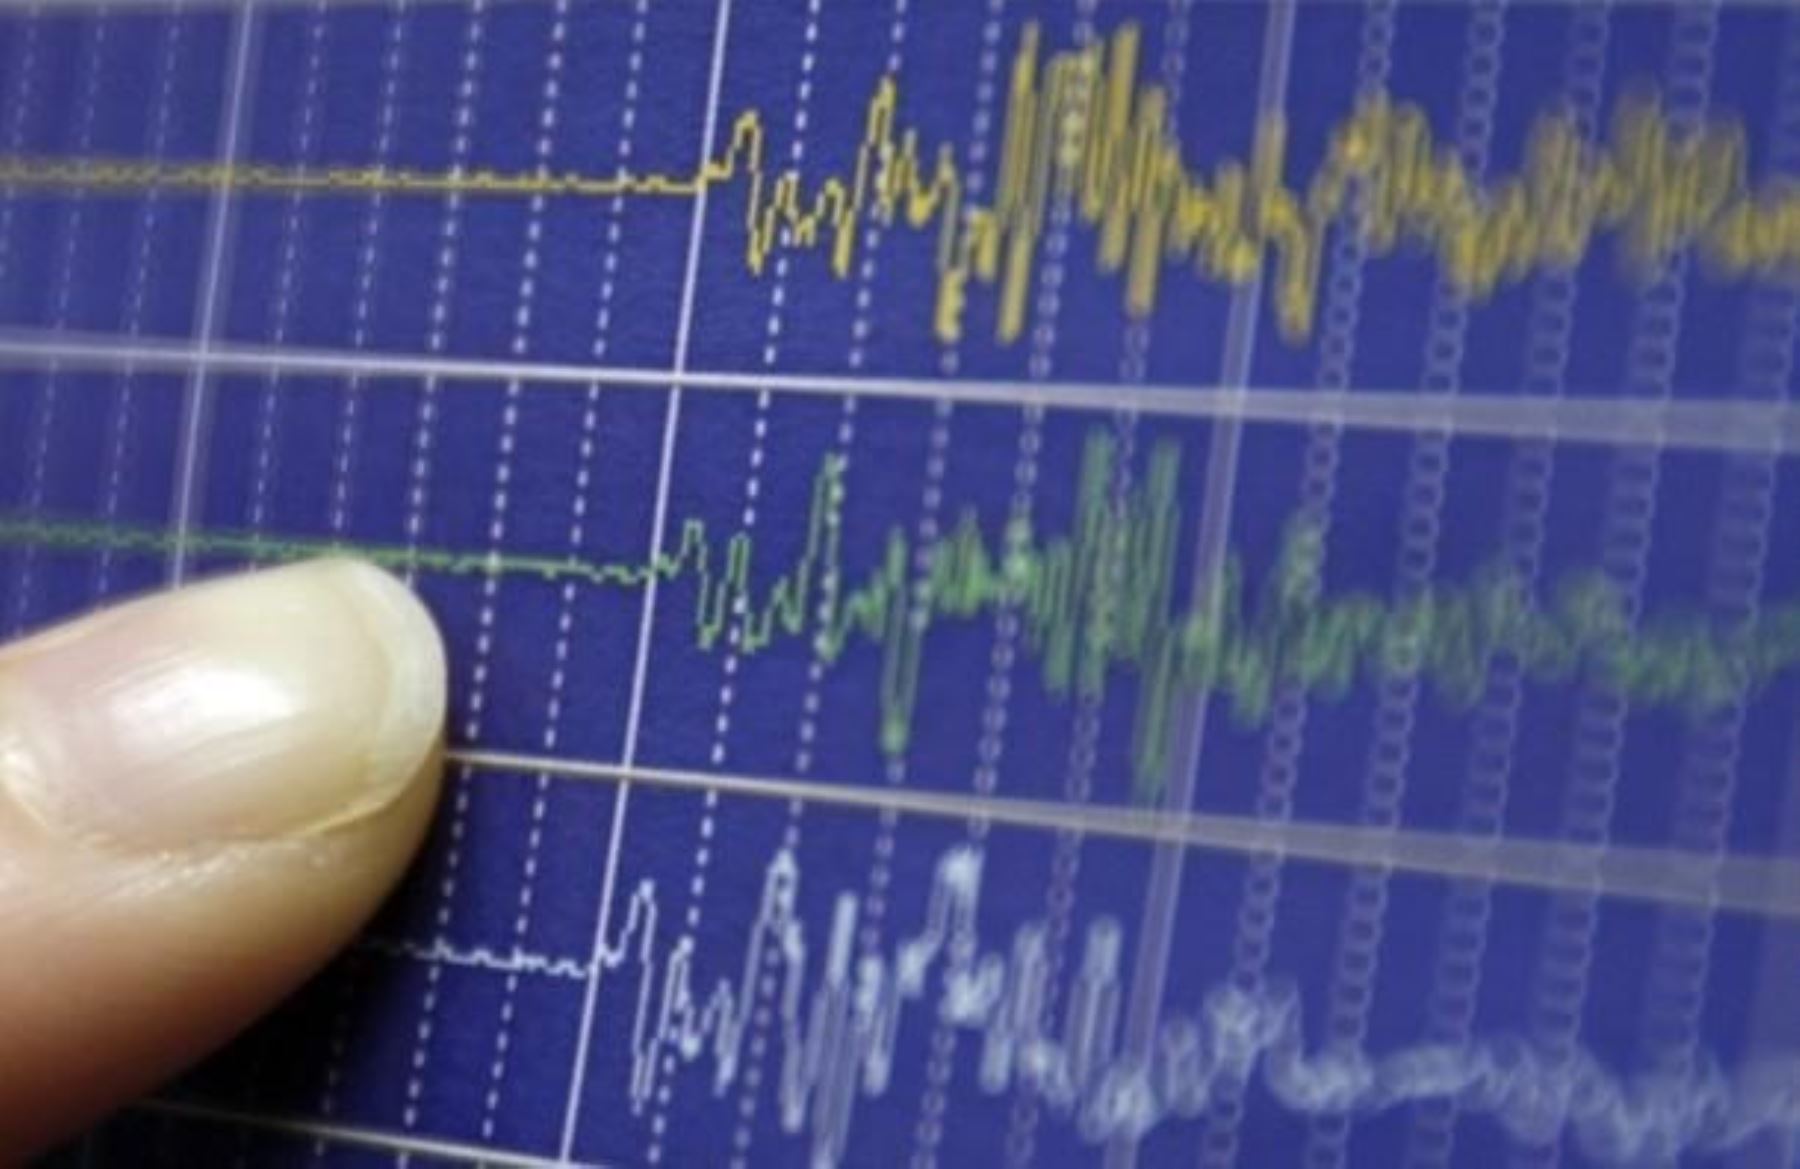 La región Ucayali registró tres sismos de mediana intensidad en menos de 24 horas. El más reciente ocurrió esta madrugada, informó el Instituto Geofísico del Perú (IGP). ANDINA/Difusión